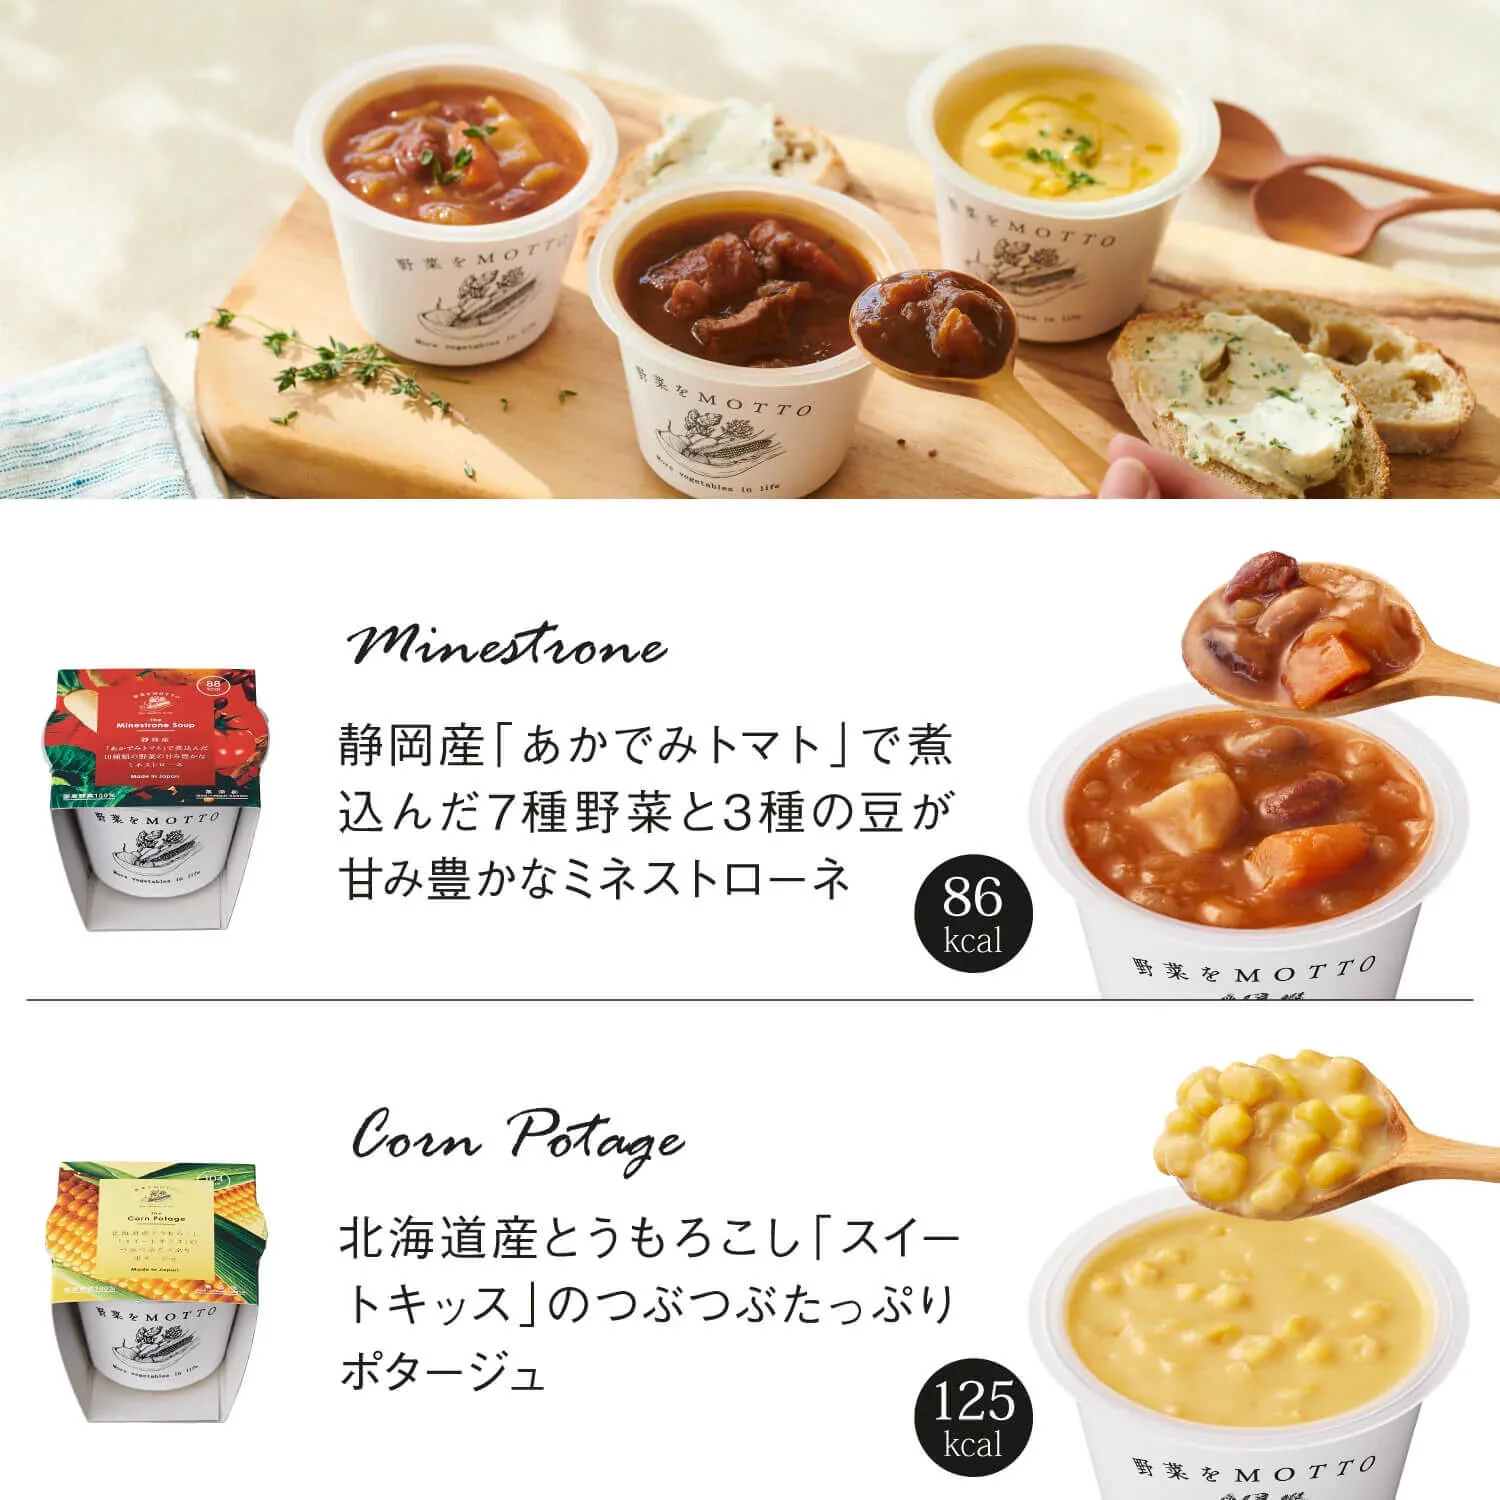 【 eGift 】スープ2個セット ホワイトデー限定パッケージ ※メールやSNSなどで贈るギフトです。